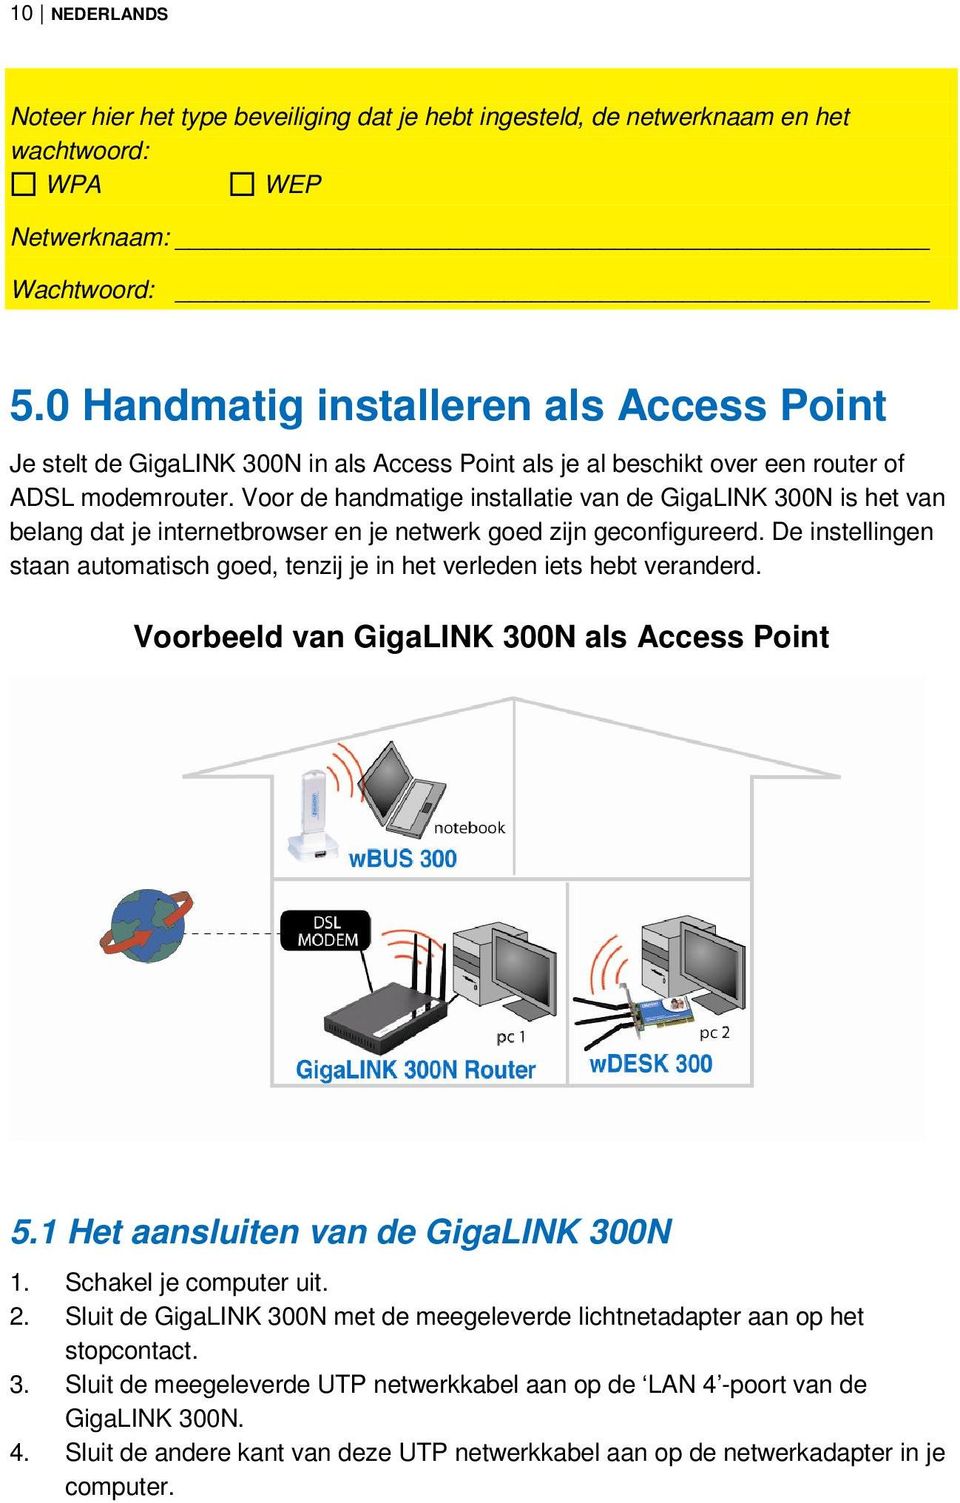 Voor de handmatige installatie van de GigaLINK 300N is het van belang dat je internetbrowser en je netwerk goed zijn geconfigureerd.